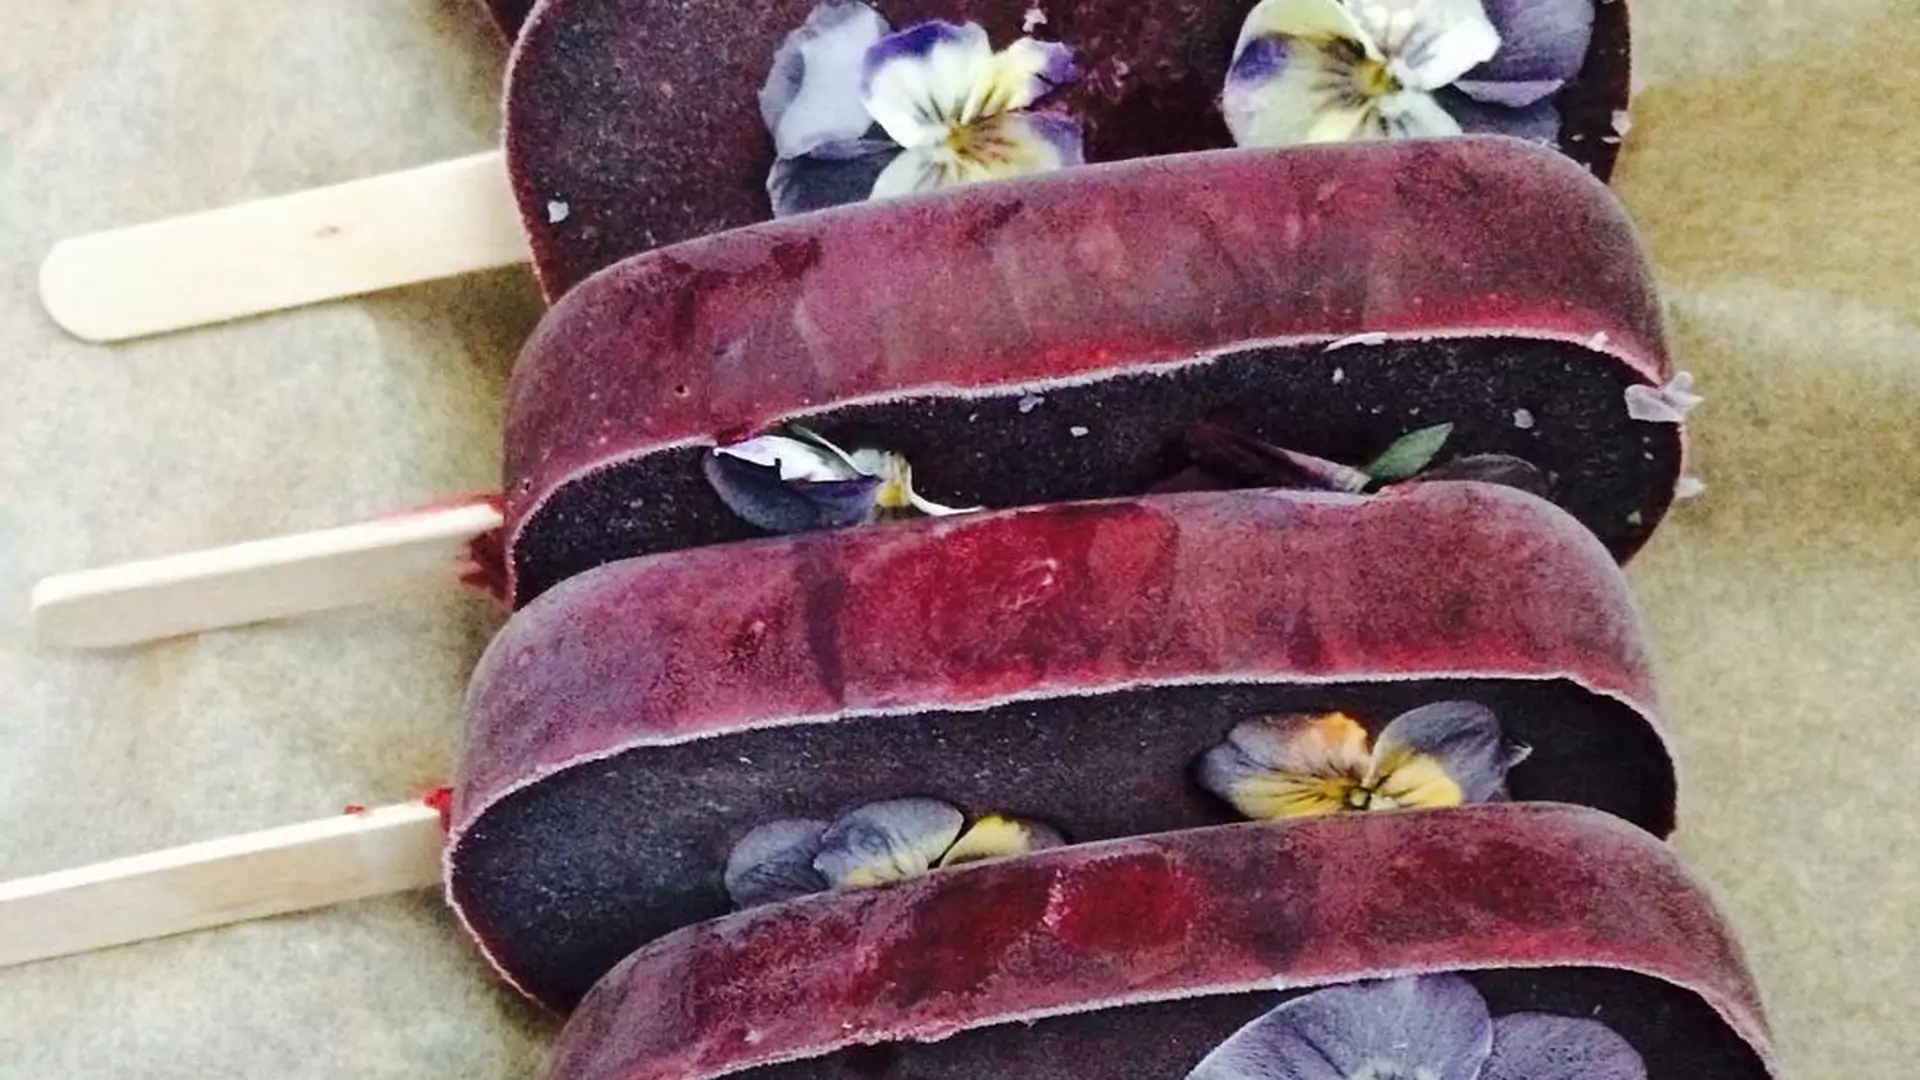 Poznańska lodziarnia serwuje lody z jadalnymi kwiatami w środku i zachwyca nimi nie tylko na zdjęciach